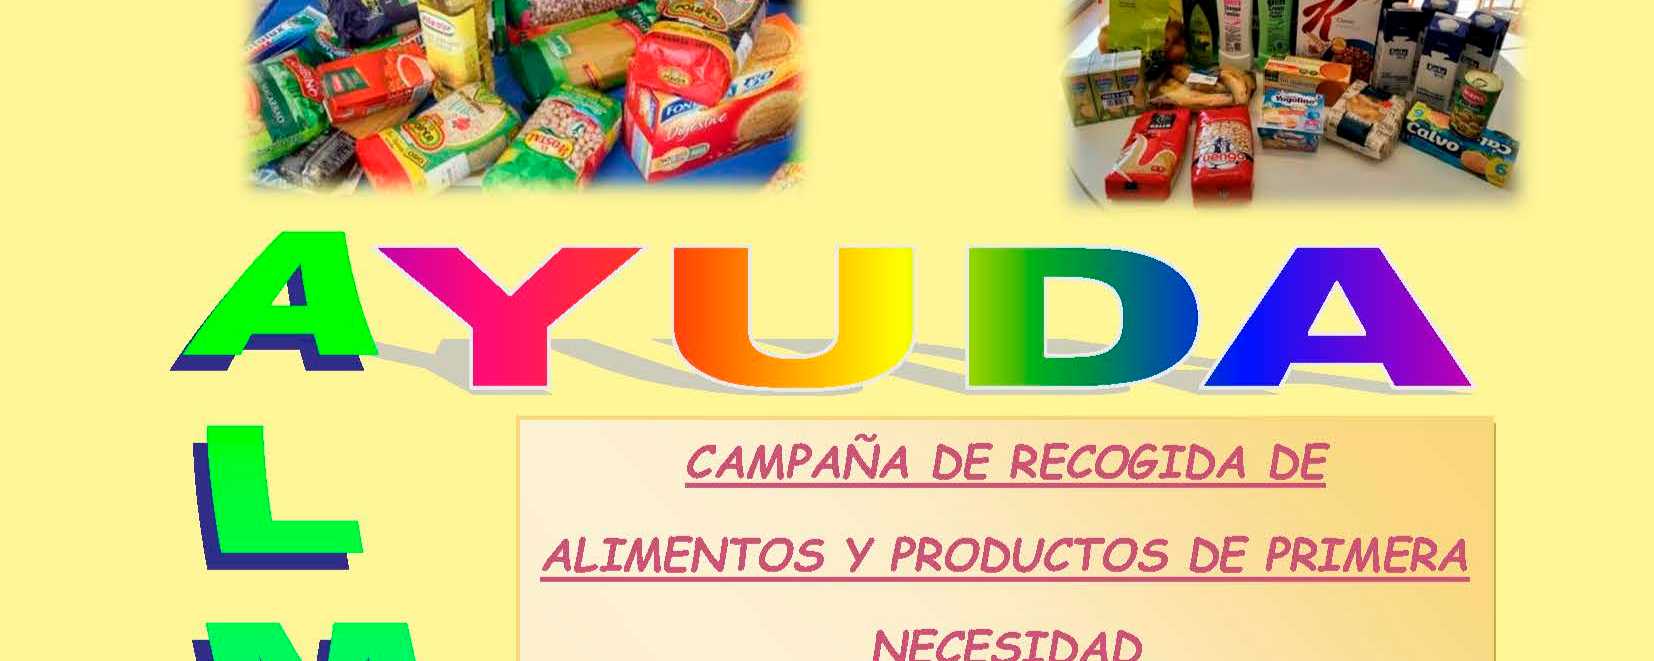 El Ayuntamiento impulsa una campaña de recogida de alimentos y productos de primera necesidad